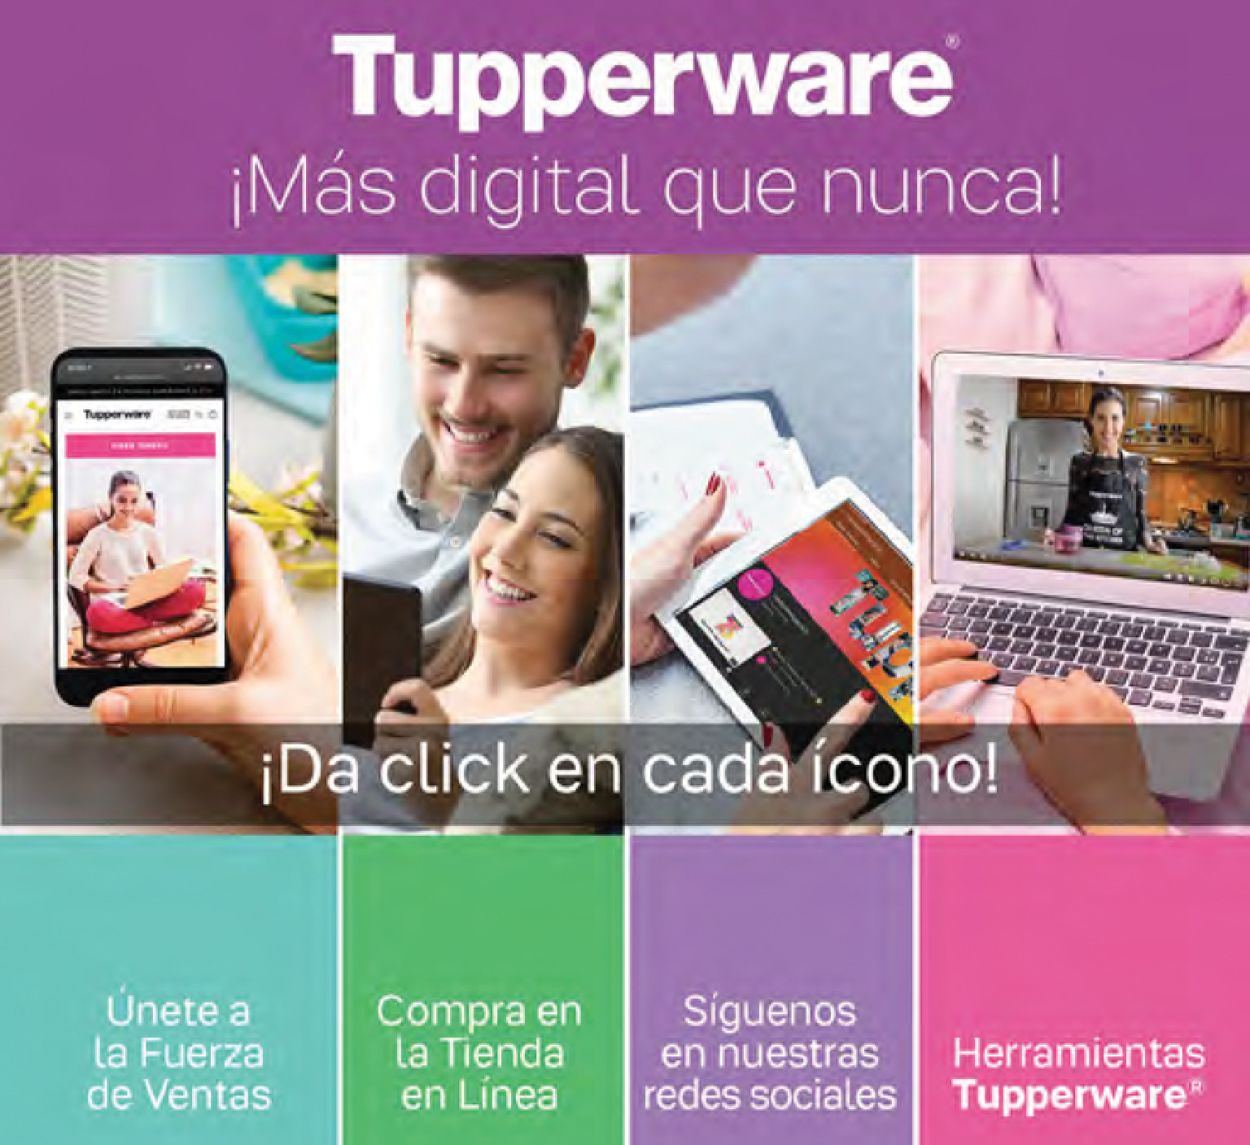 Tupperware Catálogo desde 21.03.2022